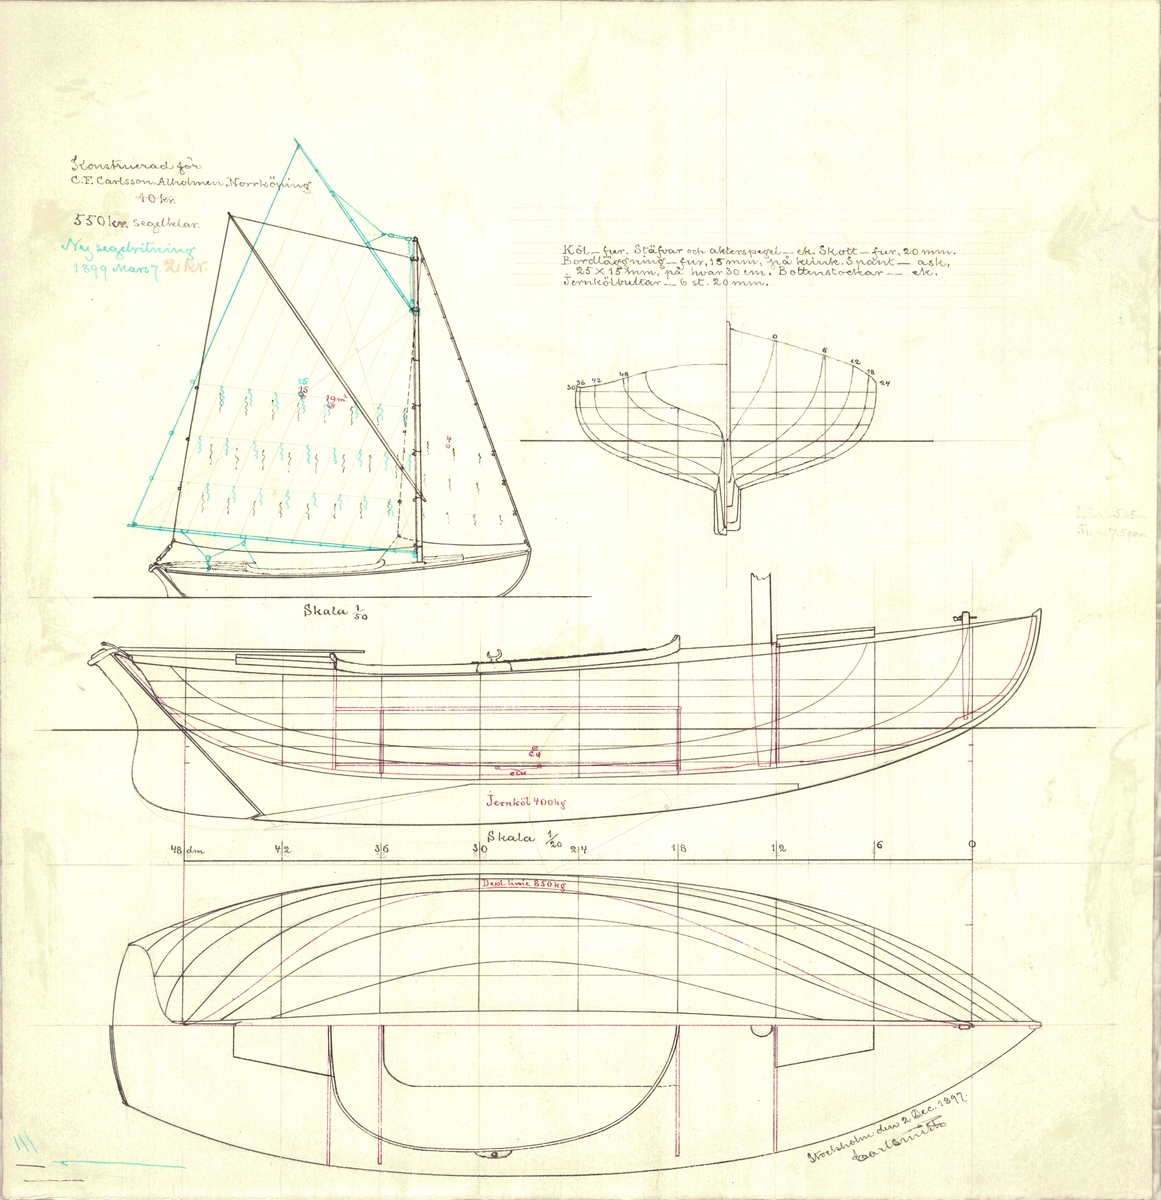 Skiss; plan och profil, spantruta och segelplan